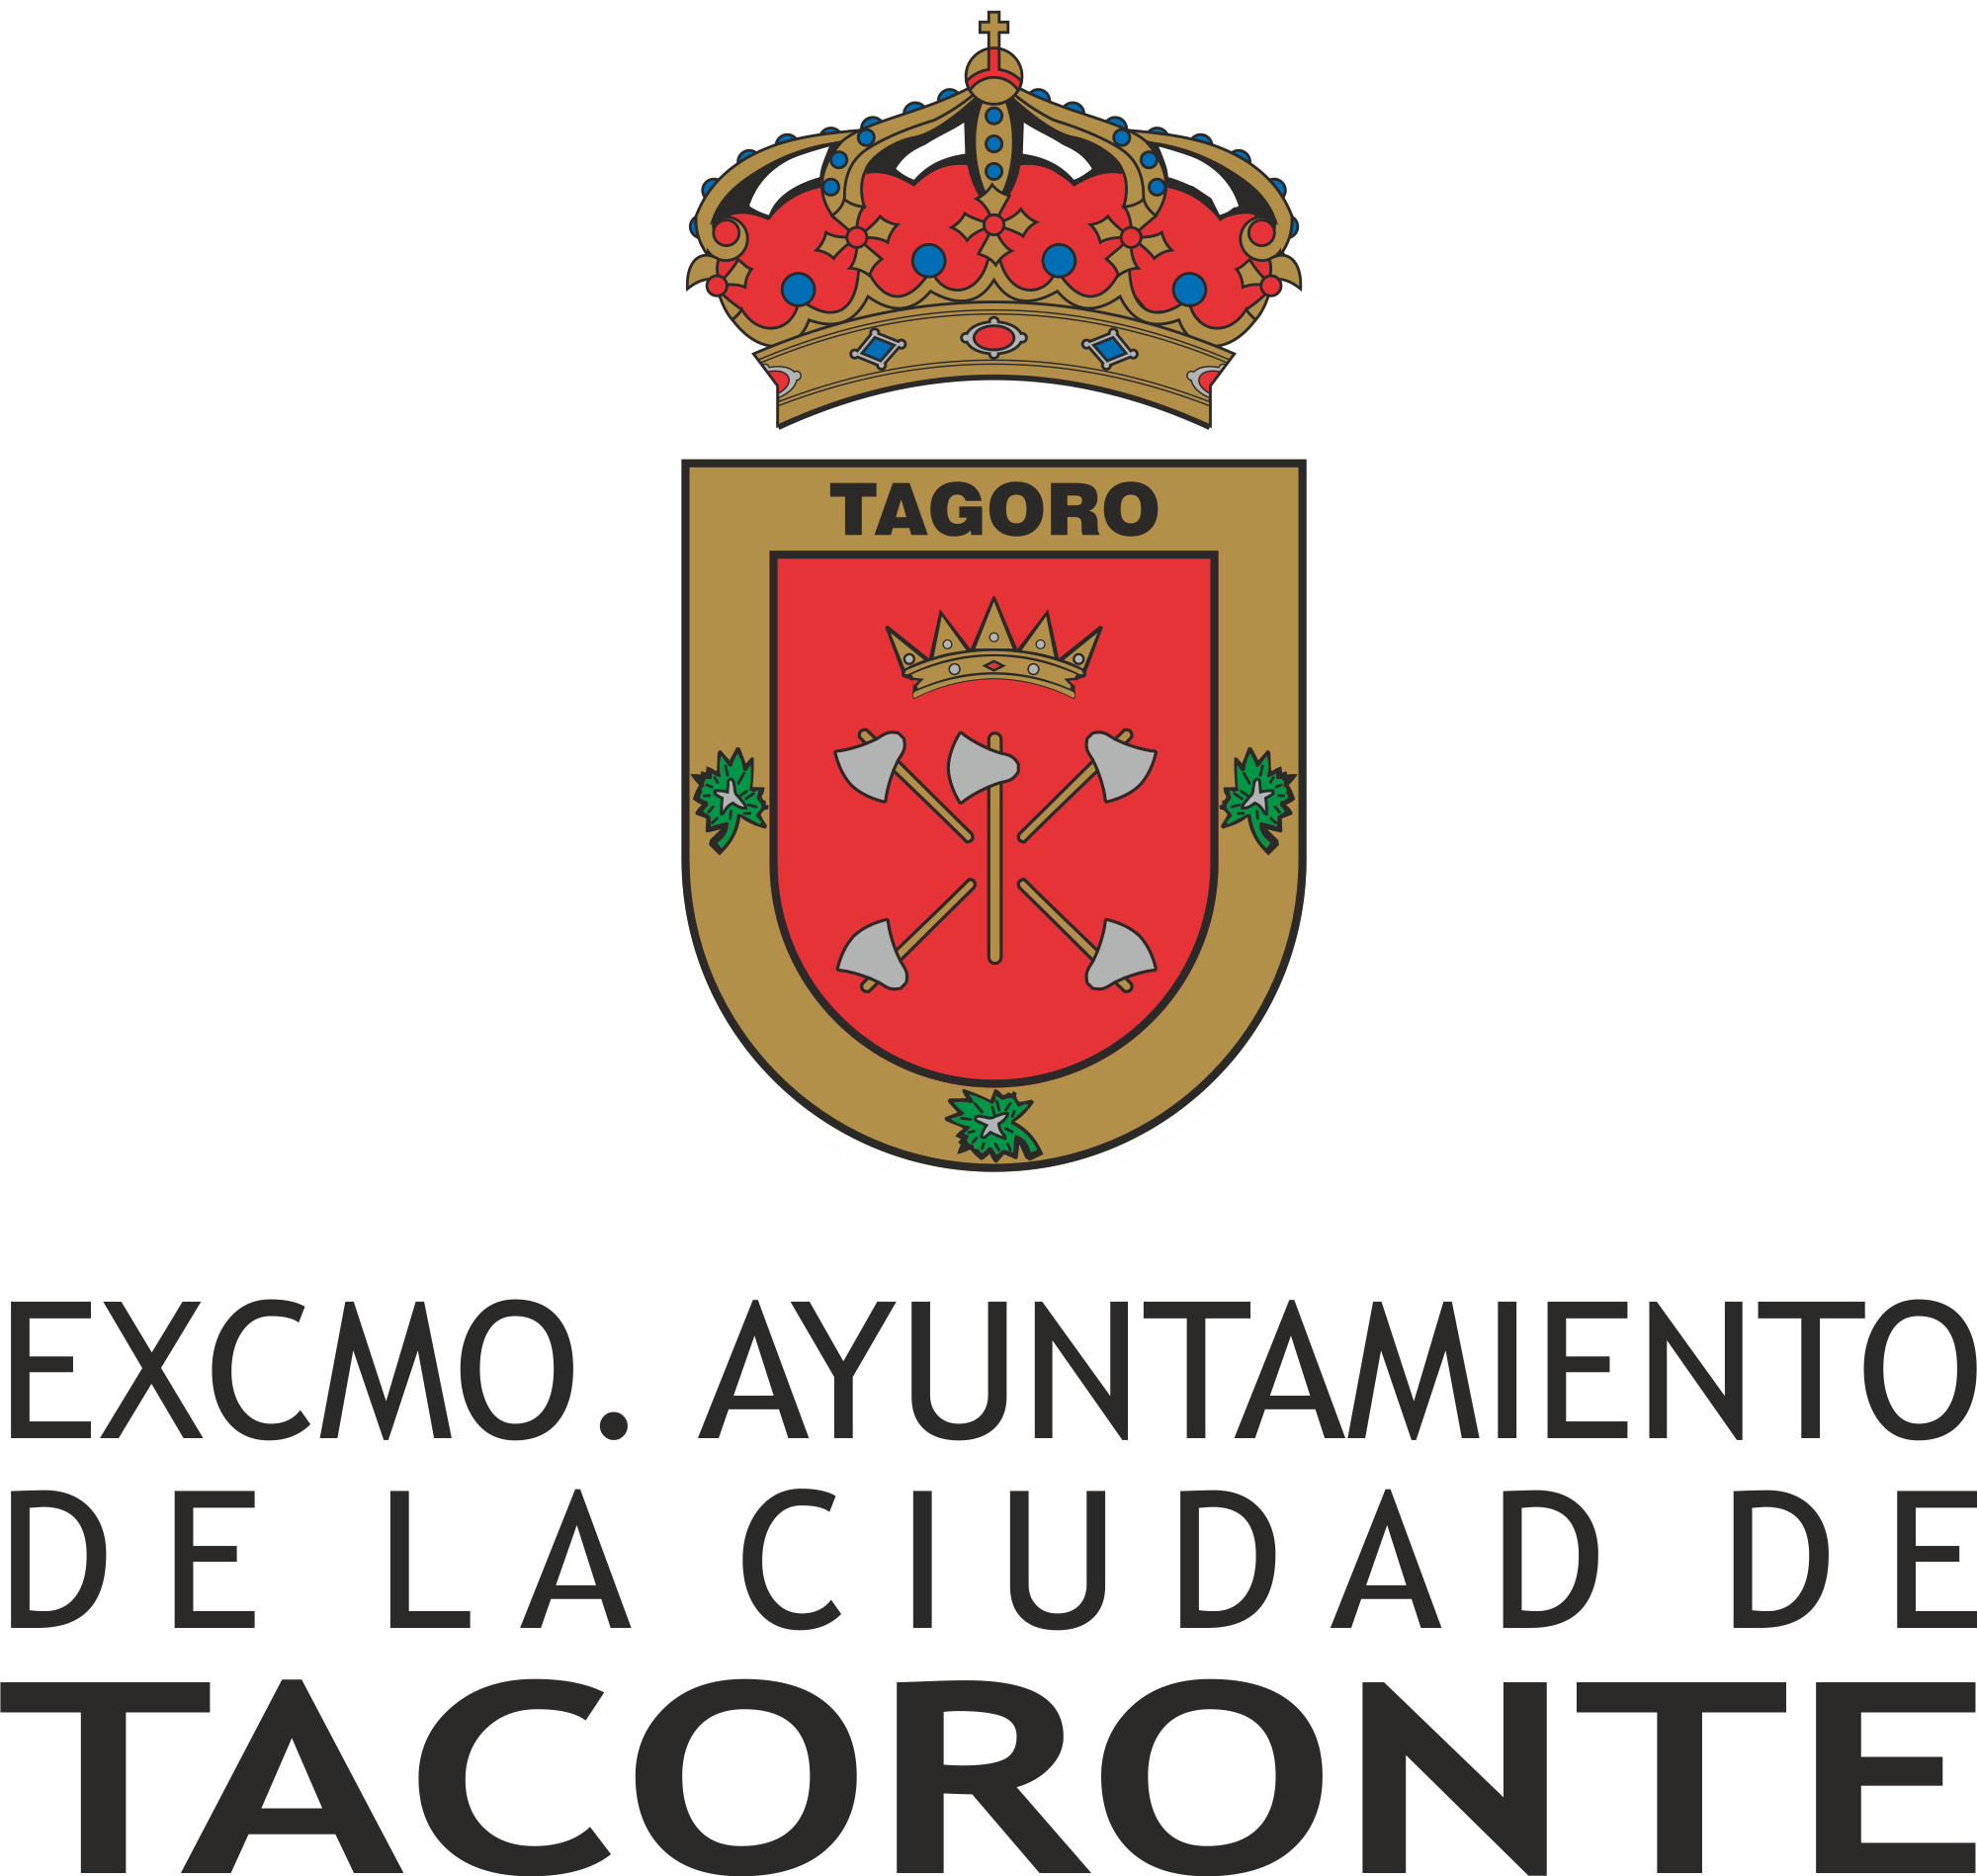 Ayuntamiento de Tacoronte